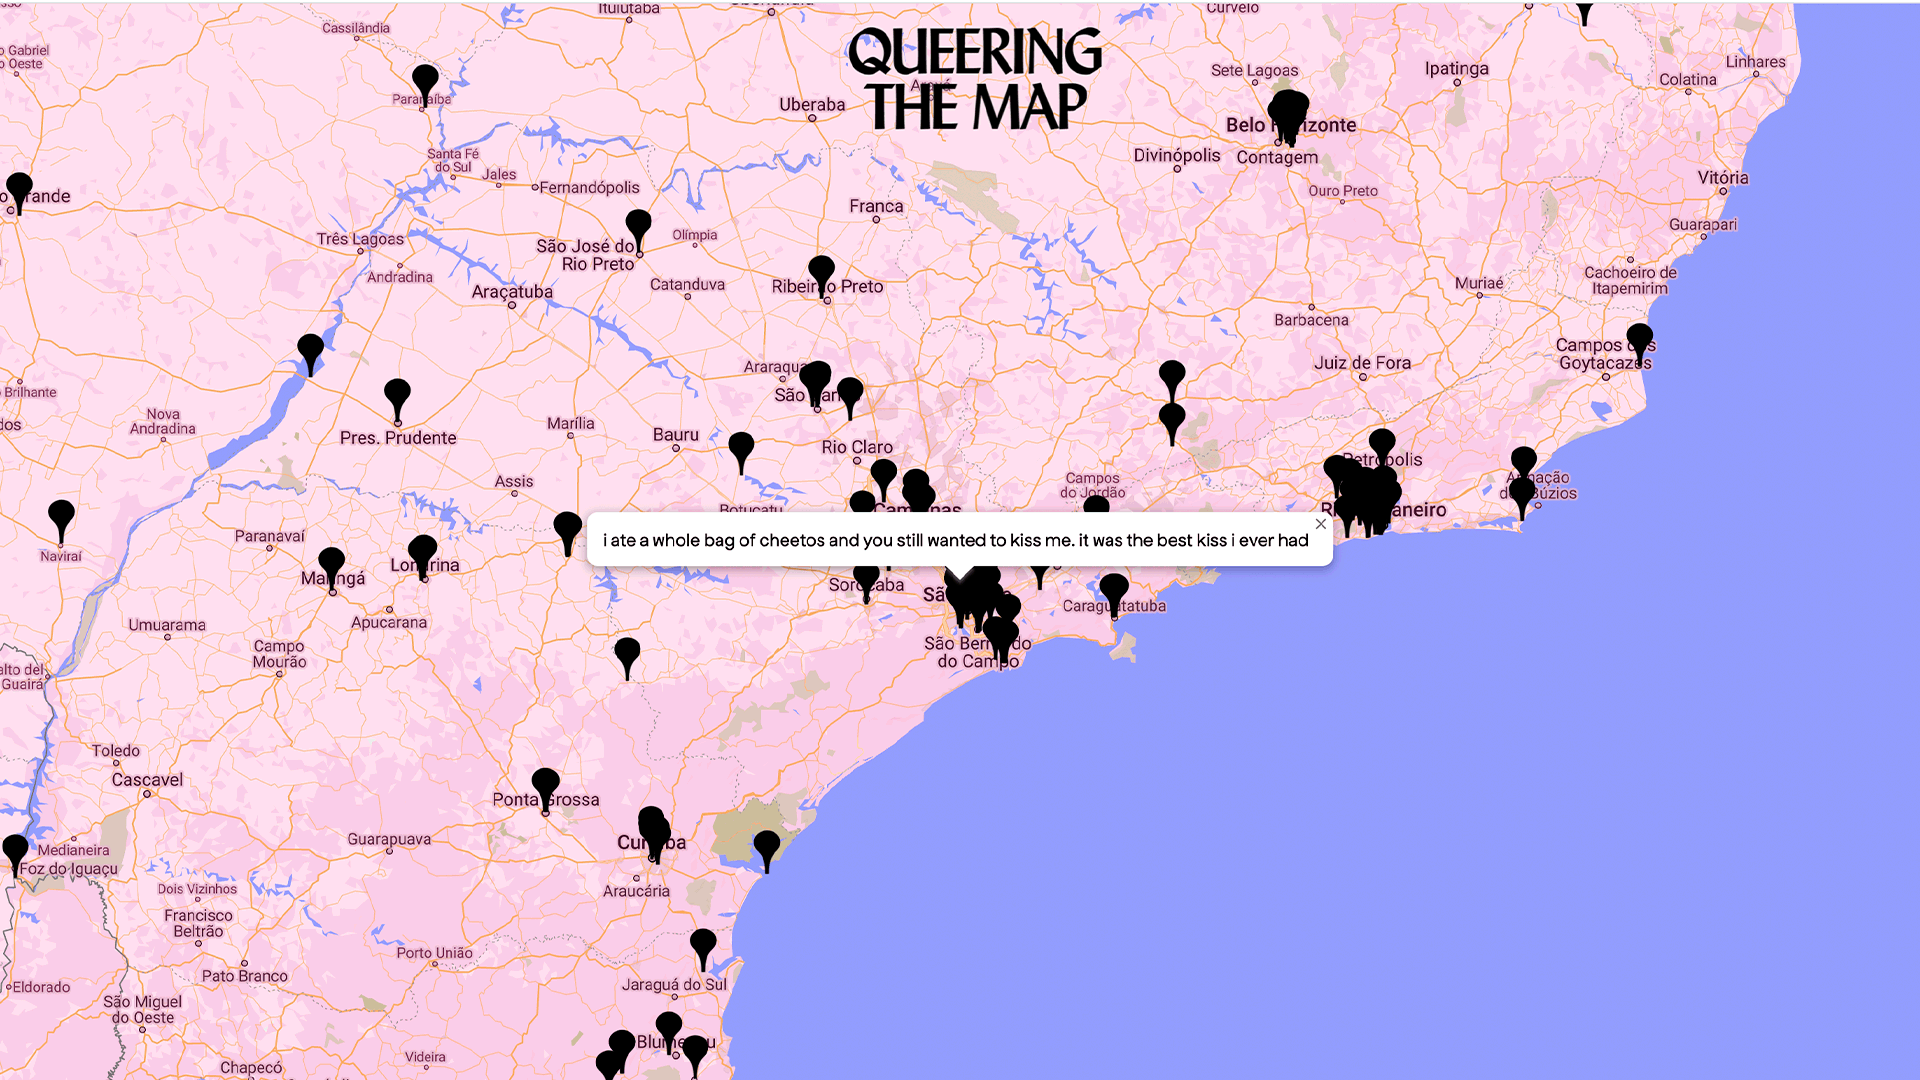 print de tela do mapa do queering the map com a frase 